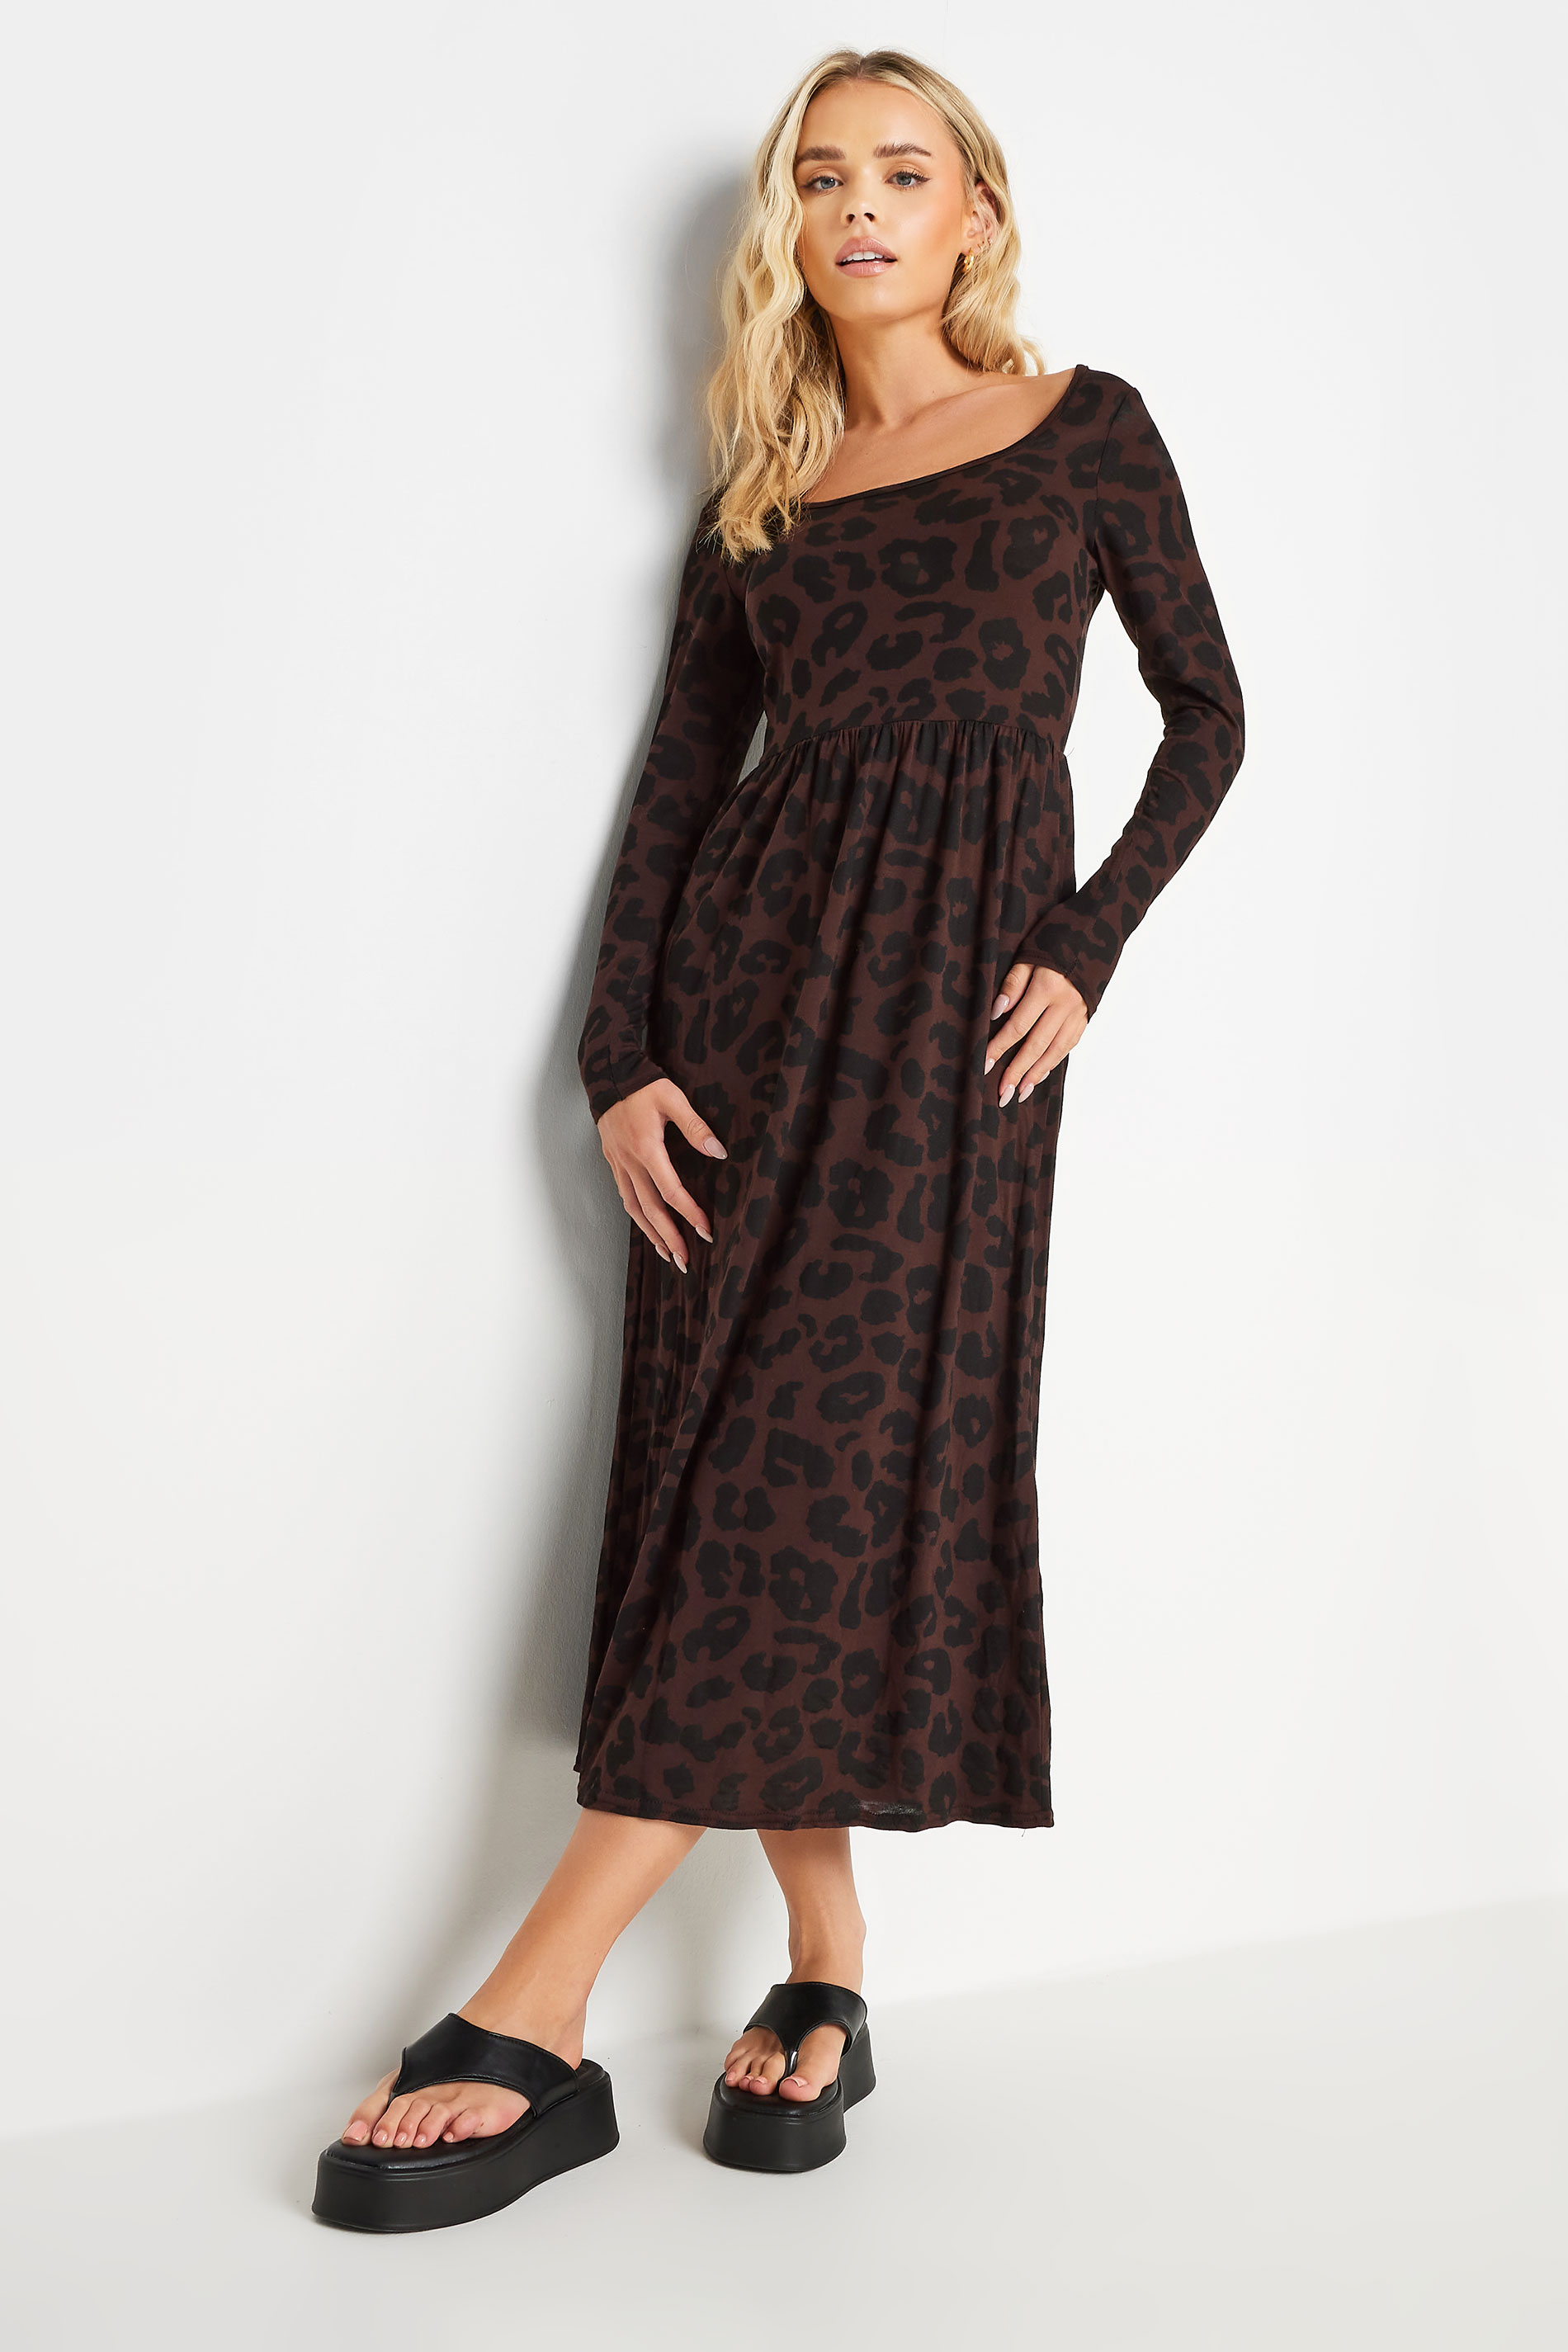 PixieGirl Petite Brown Leopard Print Long Sleeve Midi Dress | PixieGirl  1